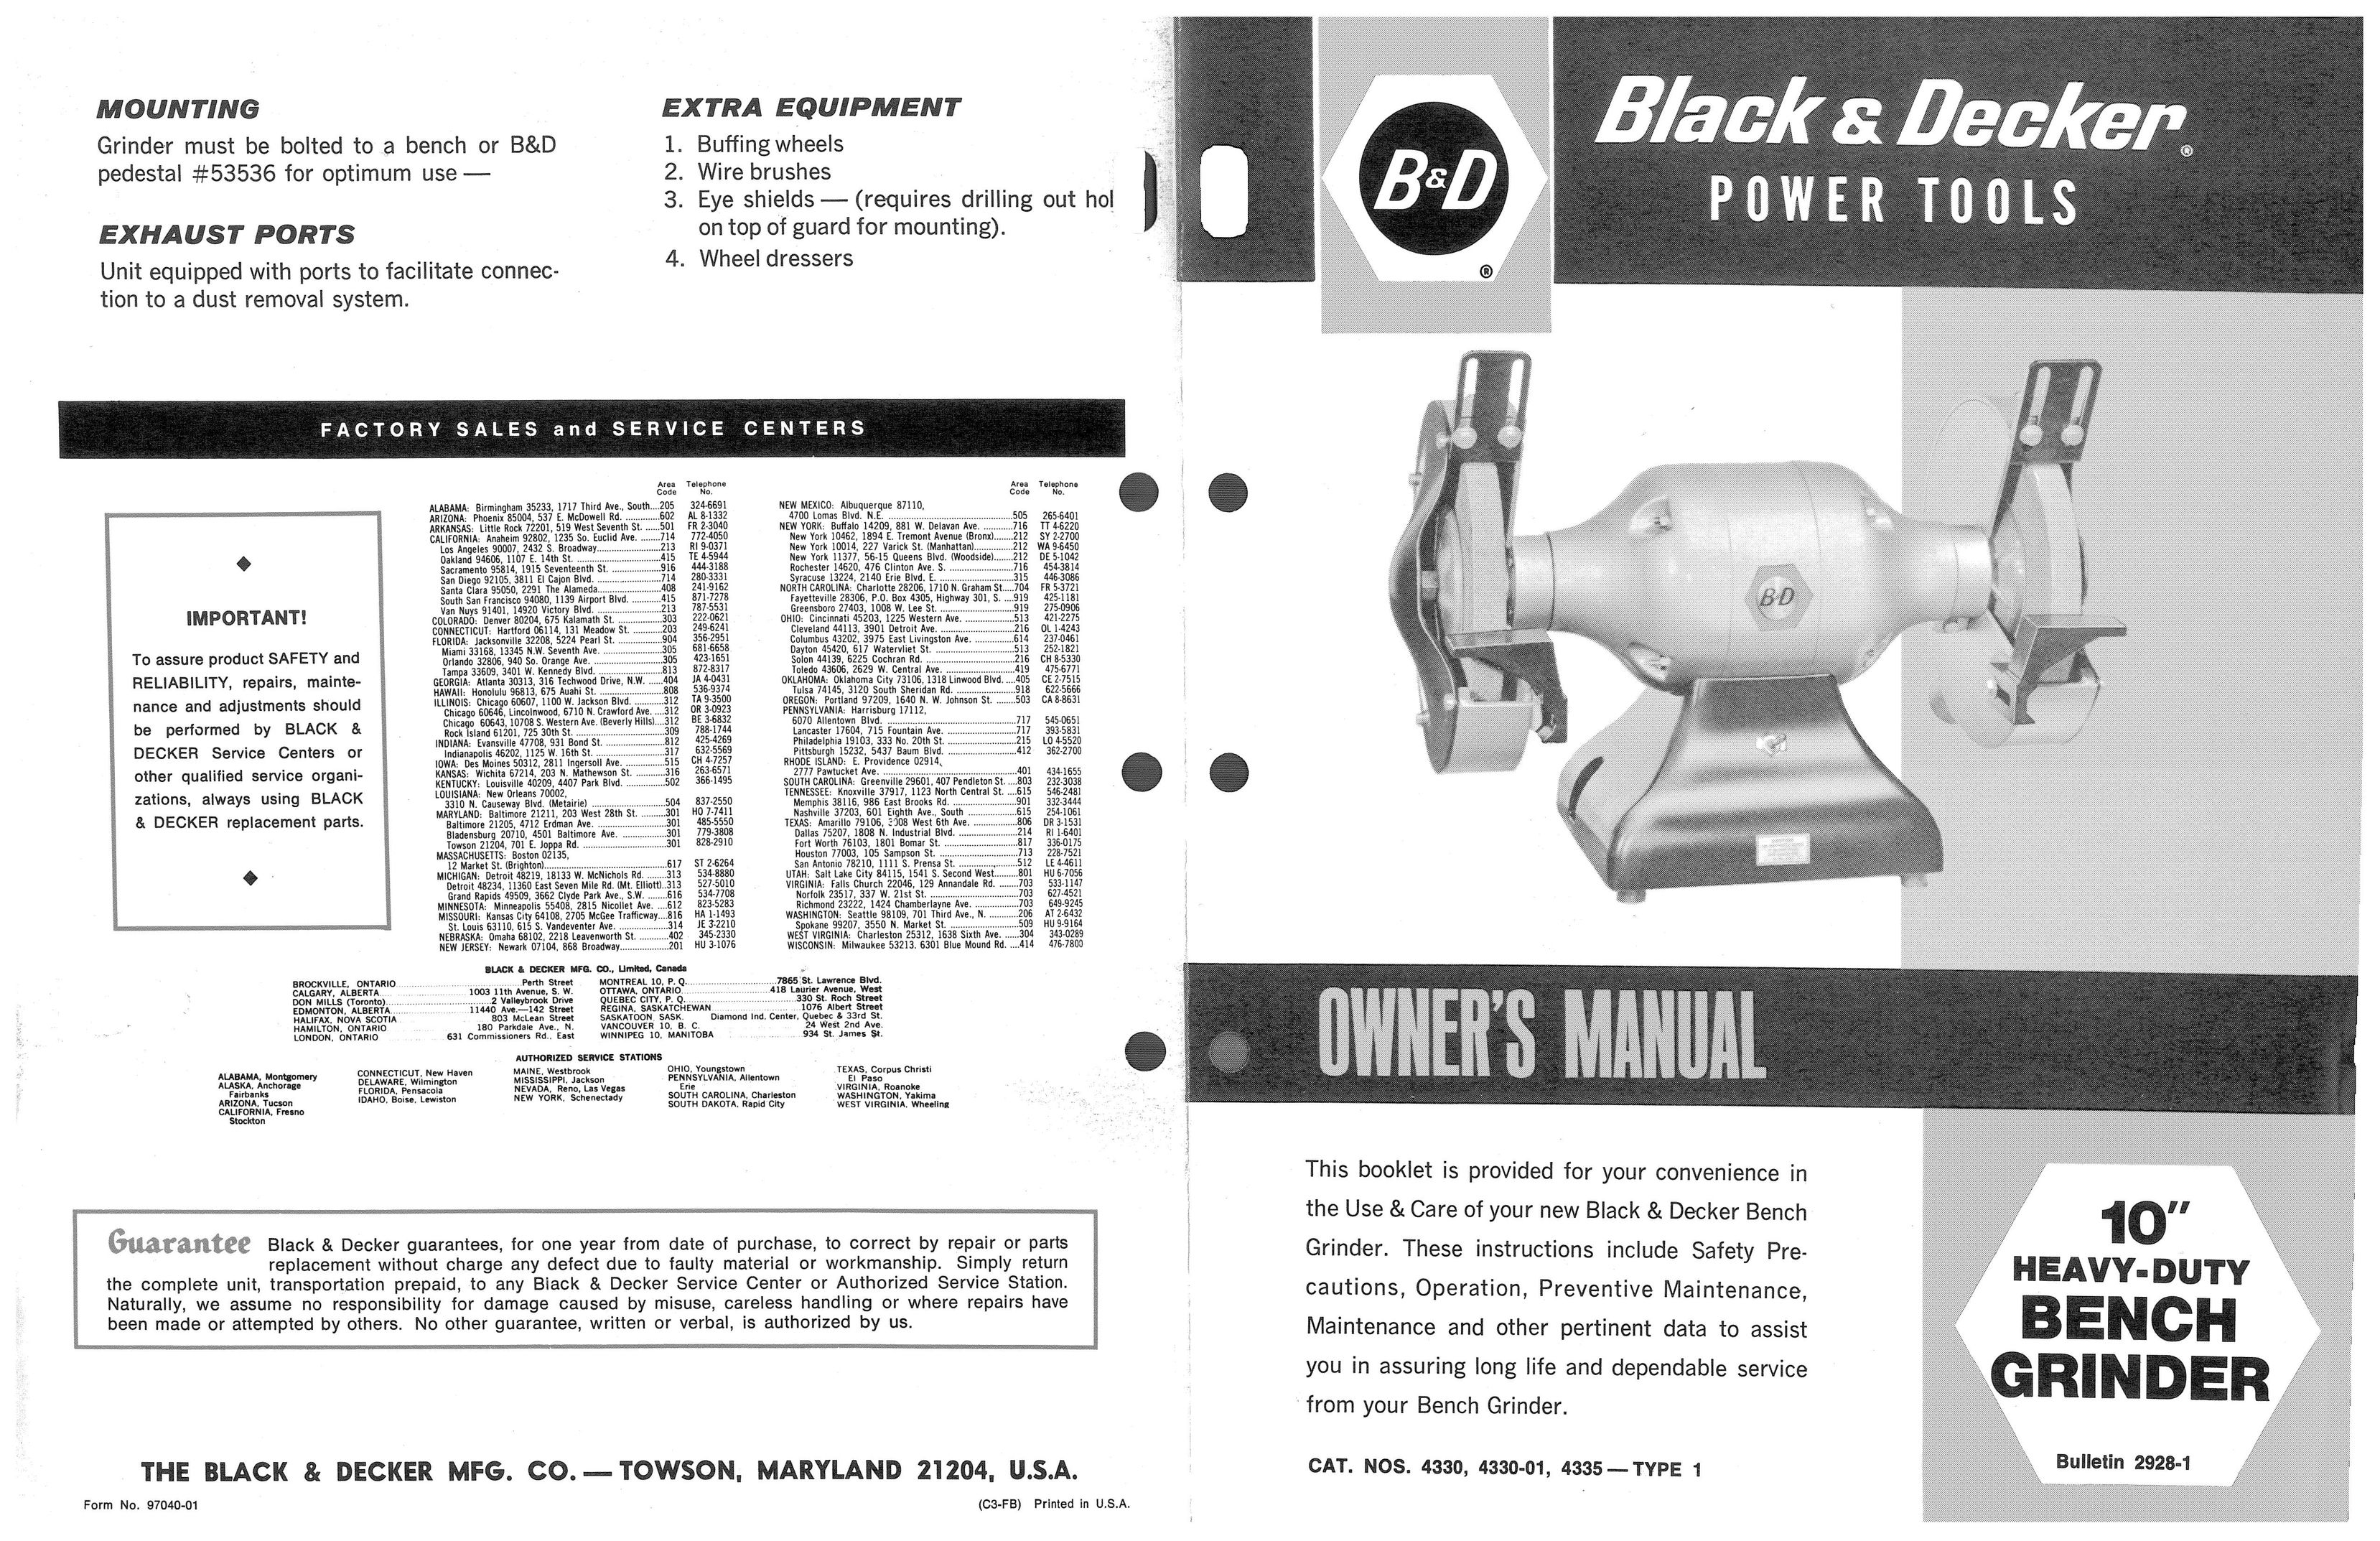 Black & Decker 4330-01 Grinder User Manual